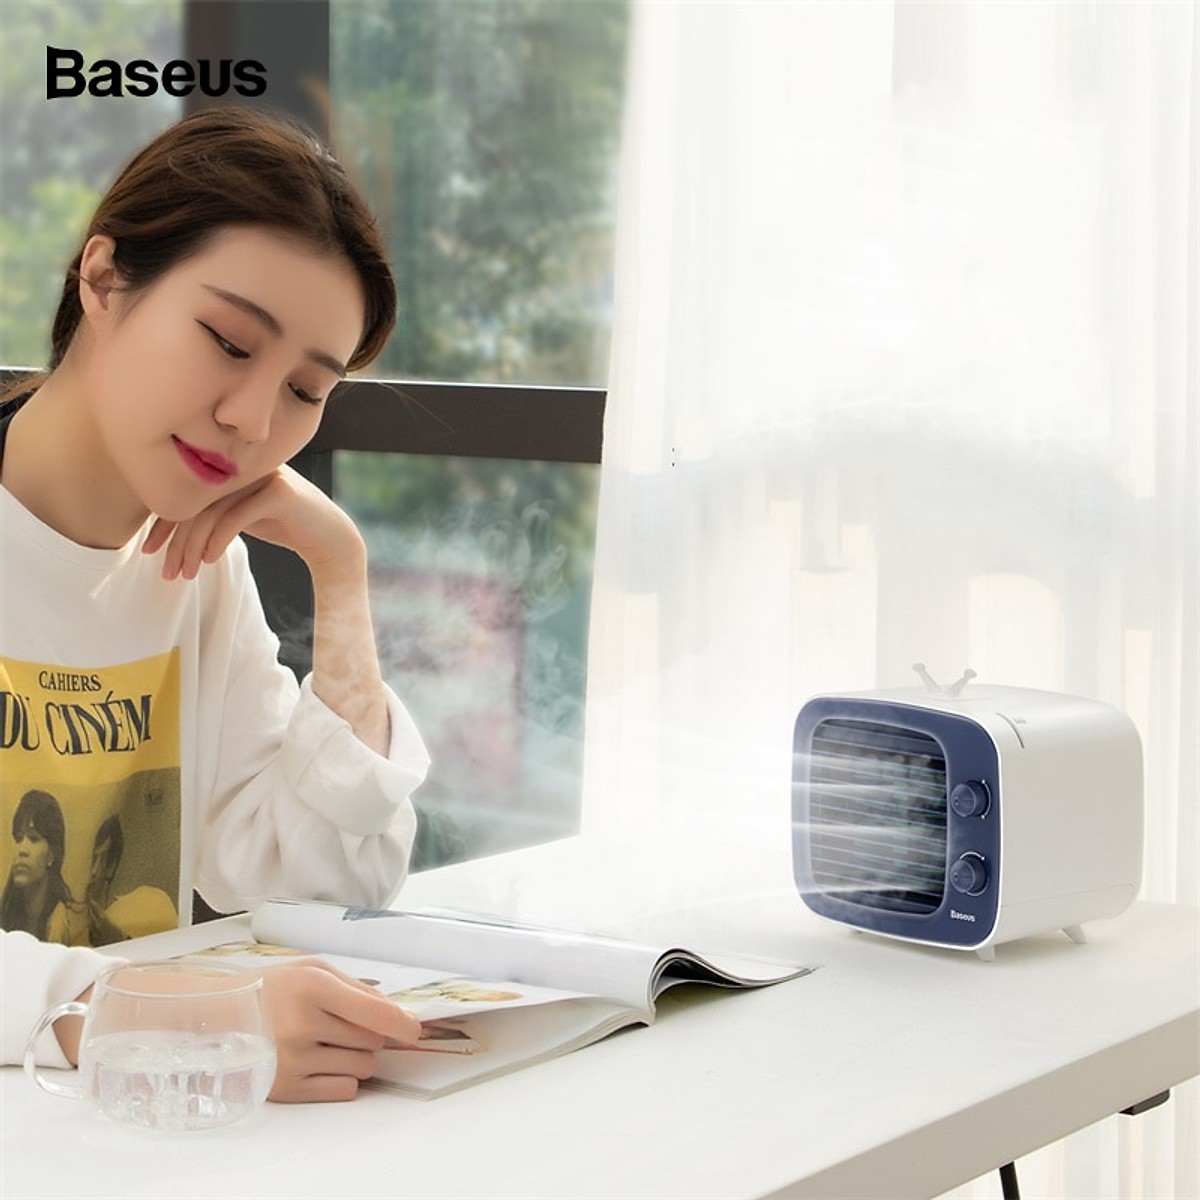 Quạt điều hòa làm mát bằng hơi nước hỗ trợ điều hoà không khí hiệu Baseus Benks Destop Cooler (3 chế độ làm mát, tạo độ ẩm, siêu mát, xoay 90 độ) - Hàng chính hãng